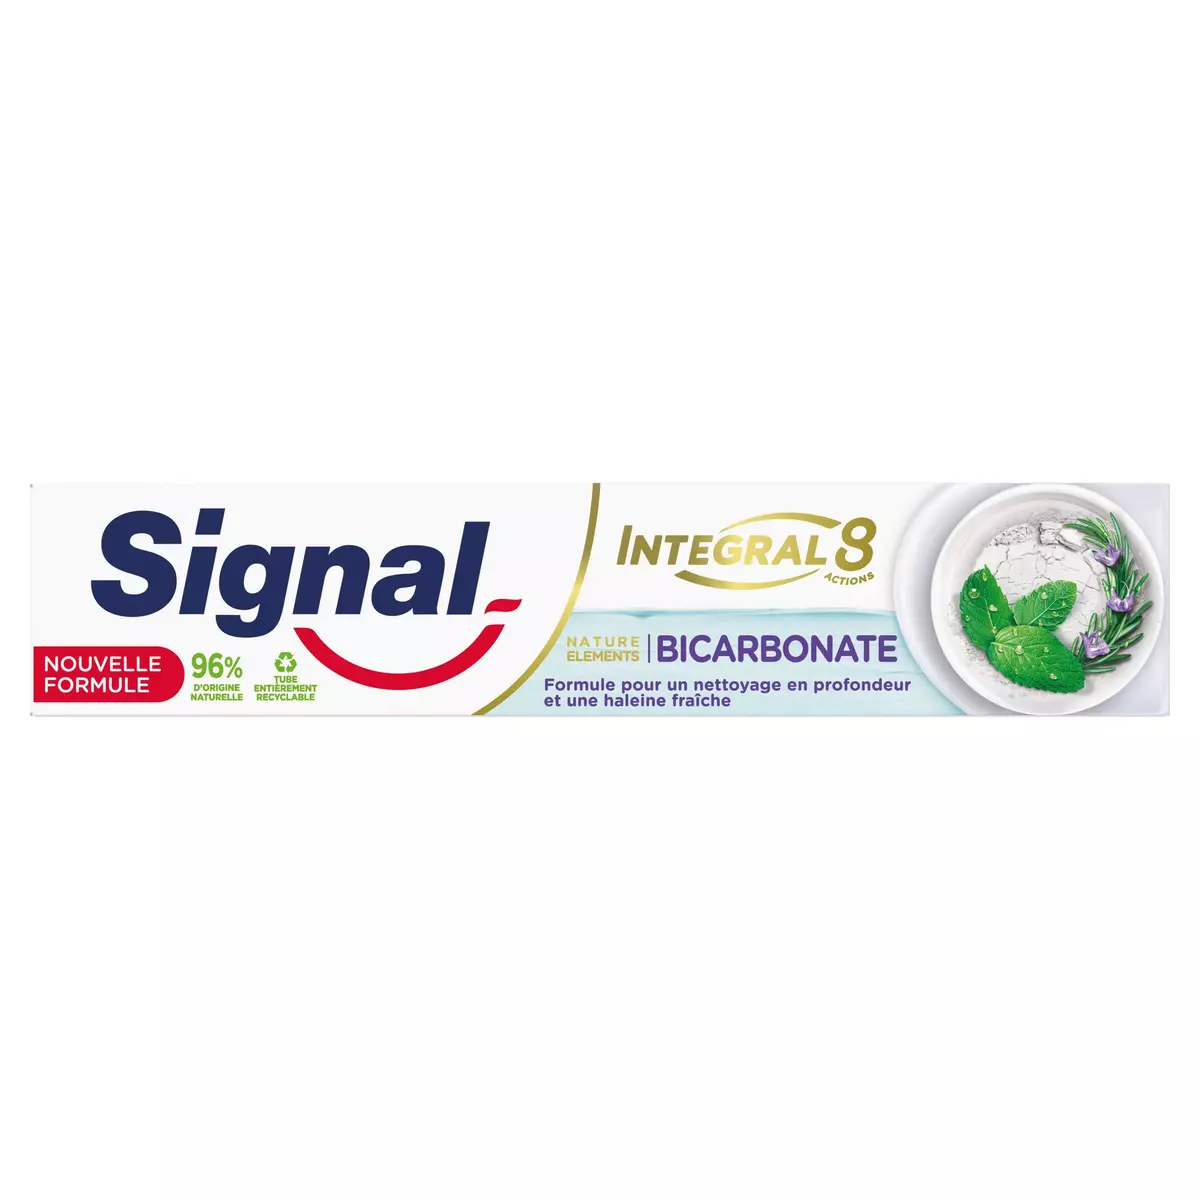 SIGNAL Dentifrice Integral 8 Nature Elements fraîcheur au bicarbonate  75ml